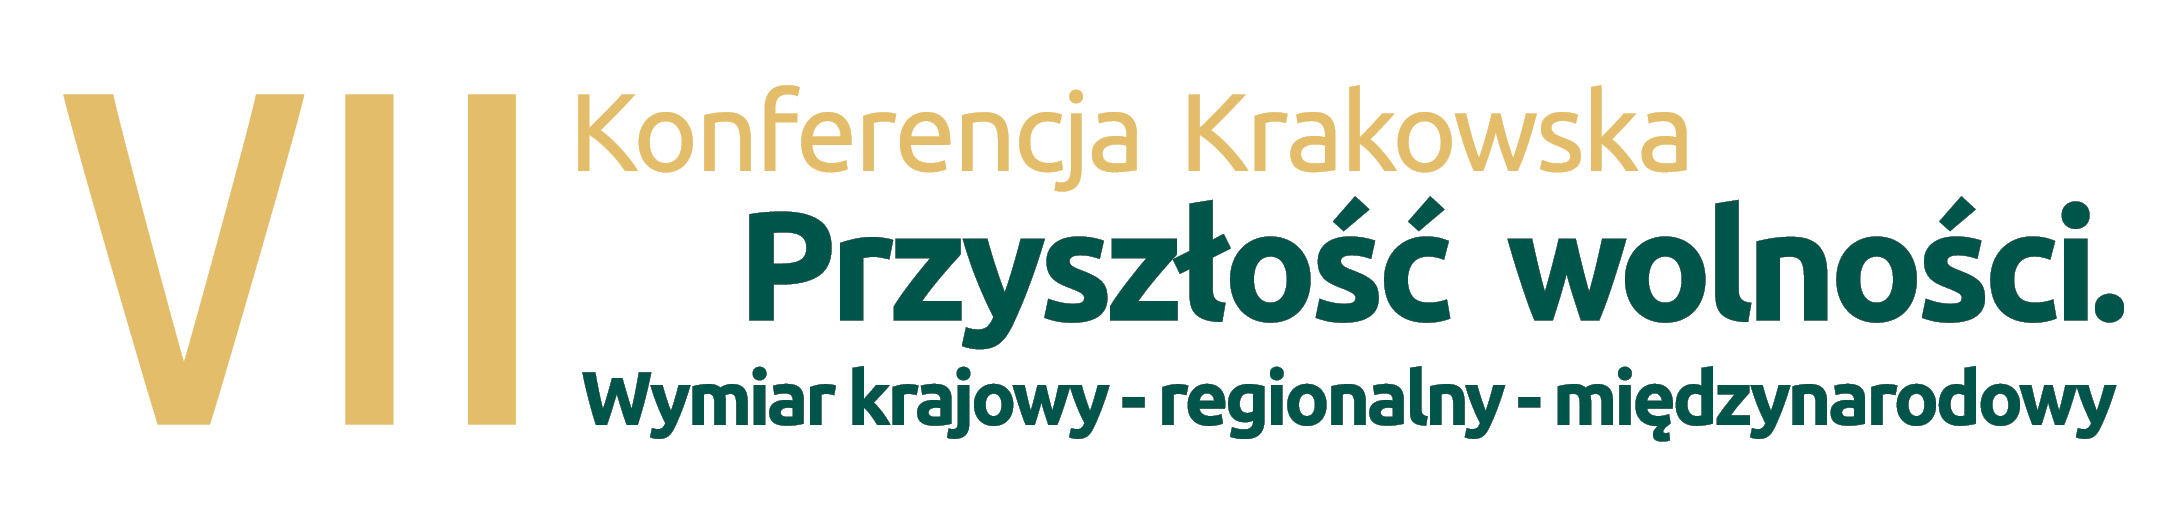 Konferencje Krakowskie organizowane są regularnie od 2008 roku.